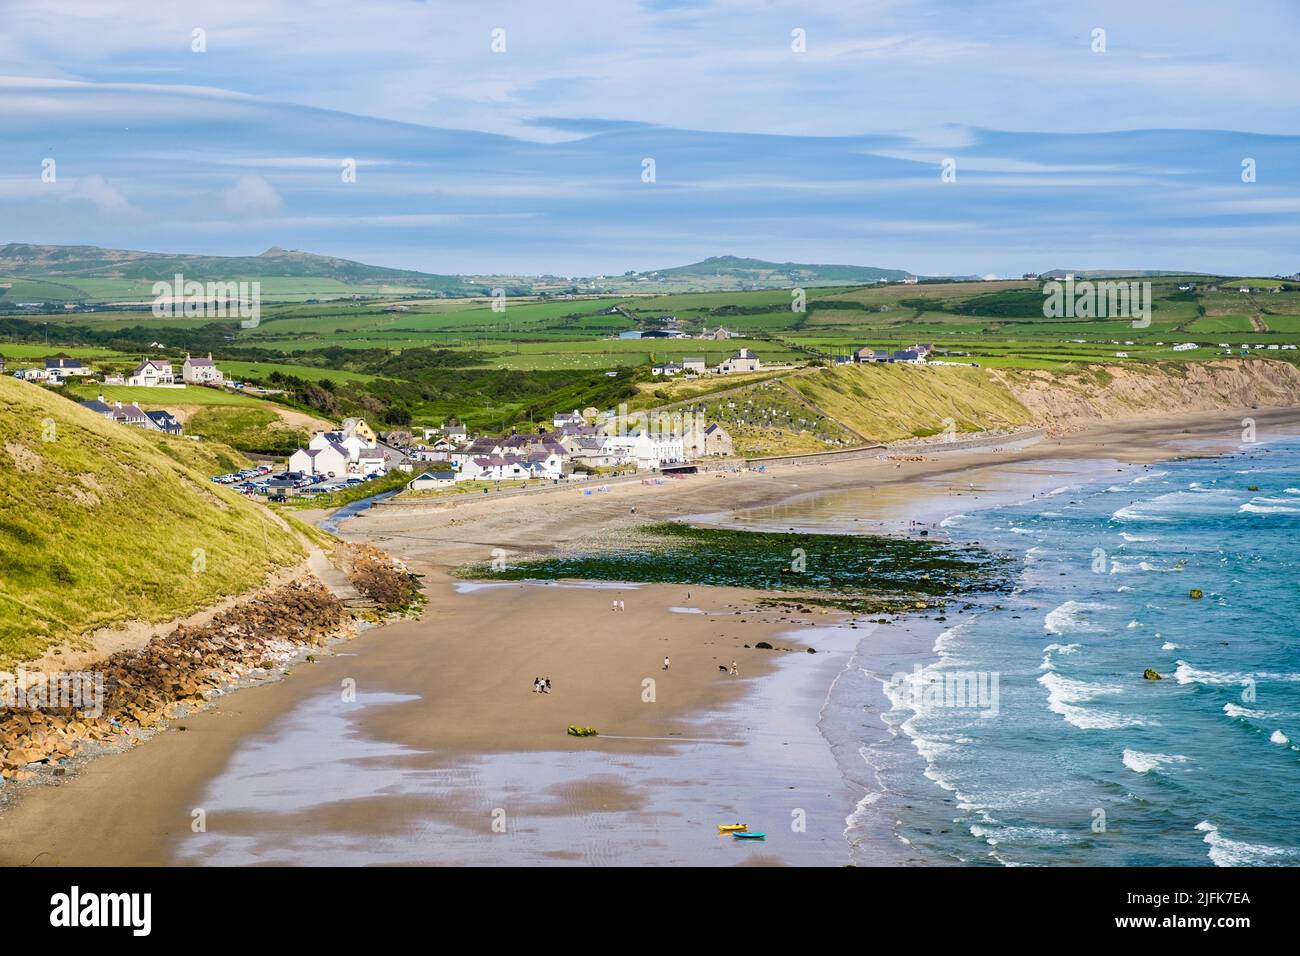 Vista a la playa en el pueblo costero de Aberdaron en la península de Llyn / Pen Llyn, Gwynedd, Gales del Norte, Reino Unido, Gran Bretaña Foto de stock